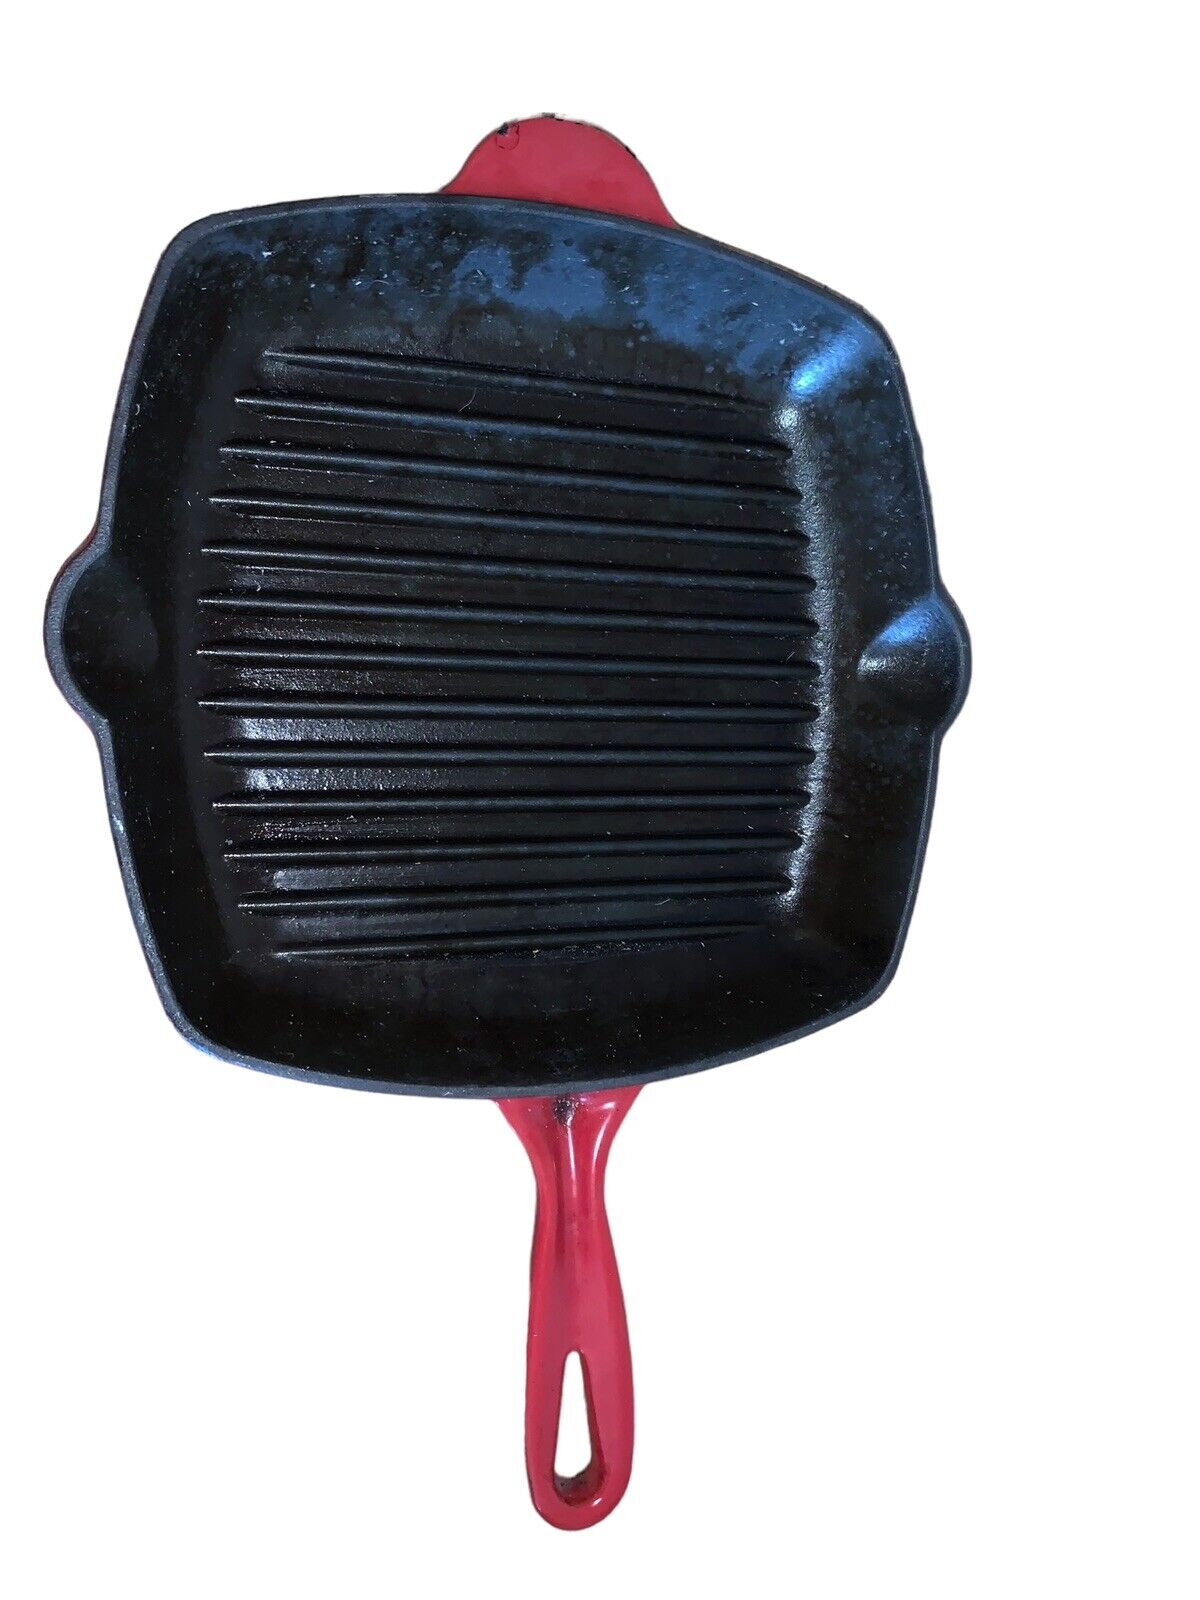 Vintage Cast Iron Skillet Griddle Pan Enamel Red With Pour Spouts 